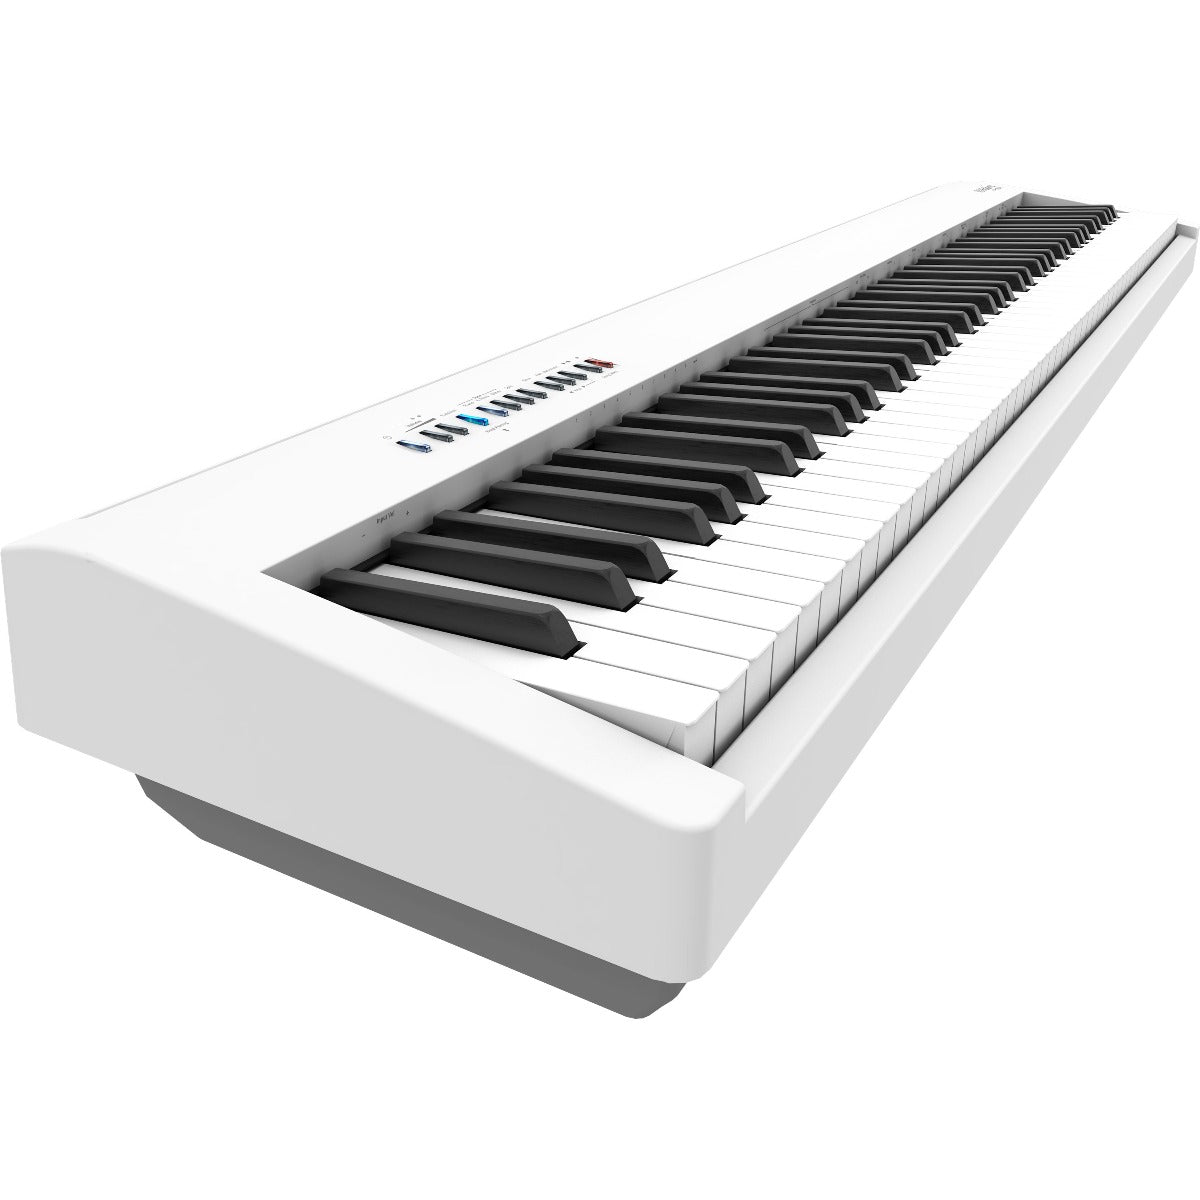 Roland FP-30X Digital Piano - White STAGE ESSENTIALS BUNDLE